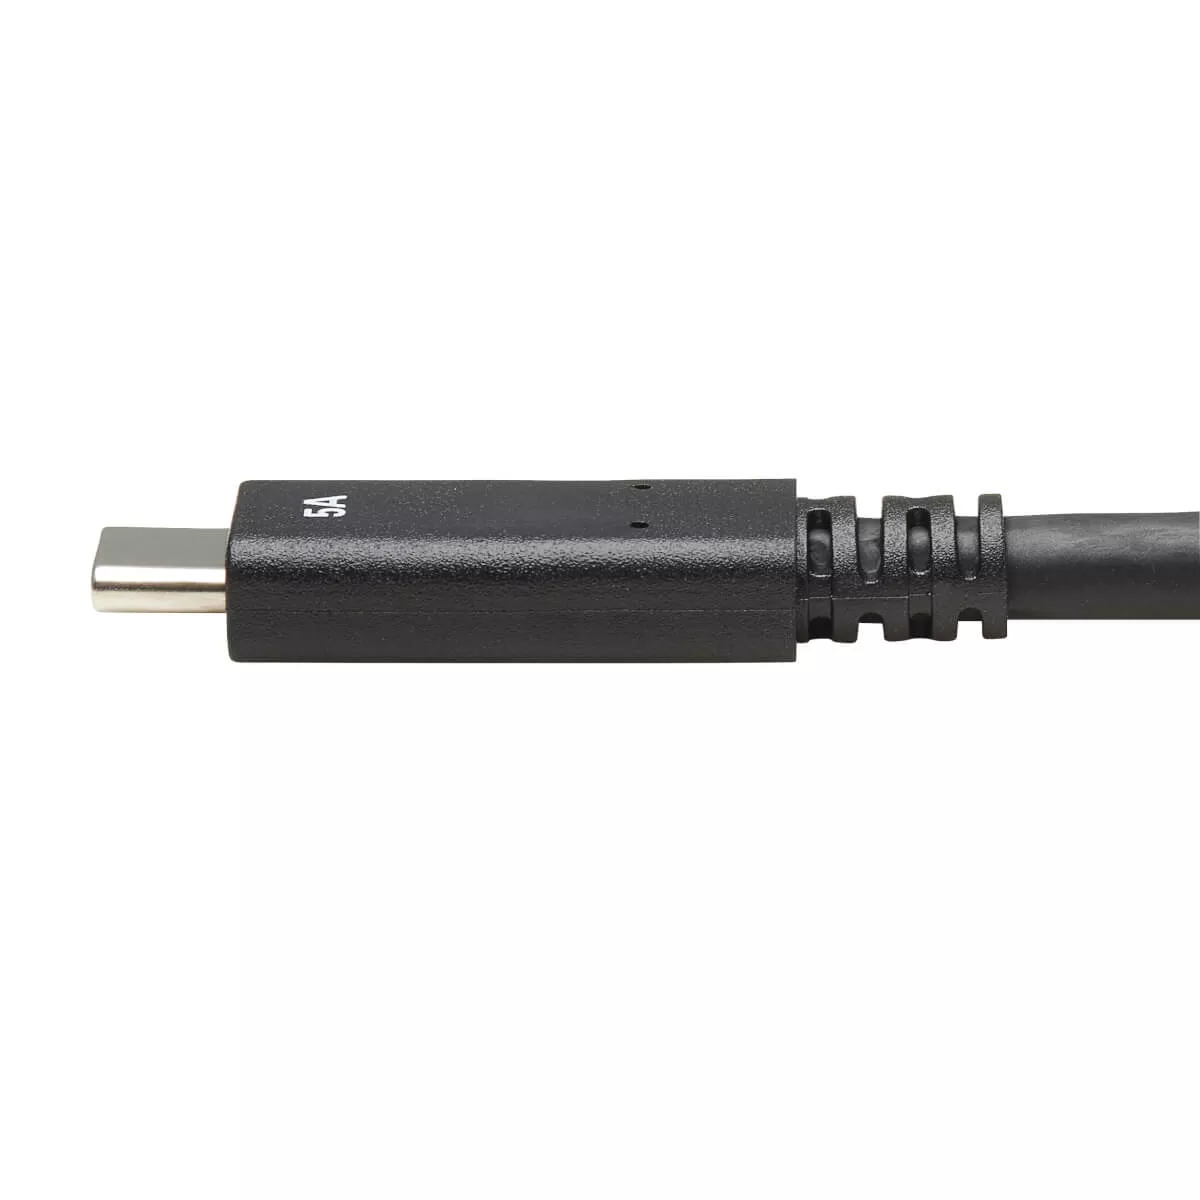 Vente EATON TRIPPLITE USB-C Cable M/M - USB 3.1 Tripp Lite au meilleur prix - visuel 6